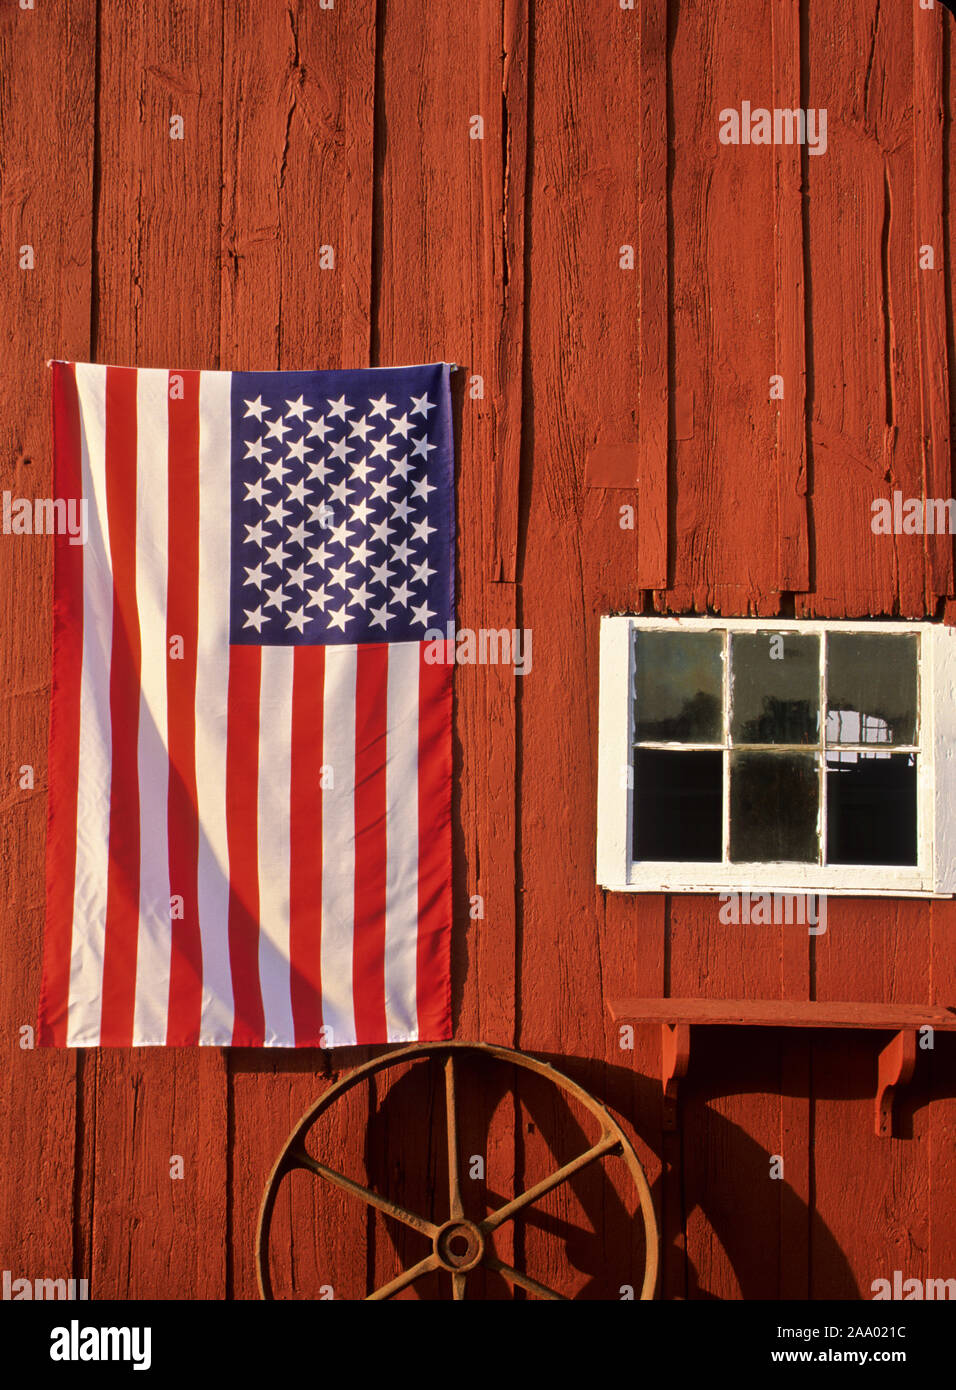 Amerikanische Flagge auf einer roten Scheune, Bauernhof in New Jersey, USA, US-Flagge USA, vertikale Landwirtschaft vintage Landwirtschaft vertikale Dämmerung pt Stockfoto